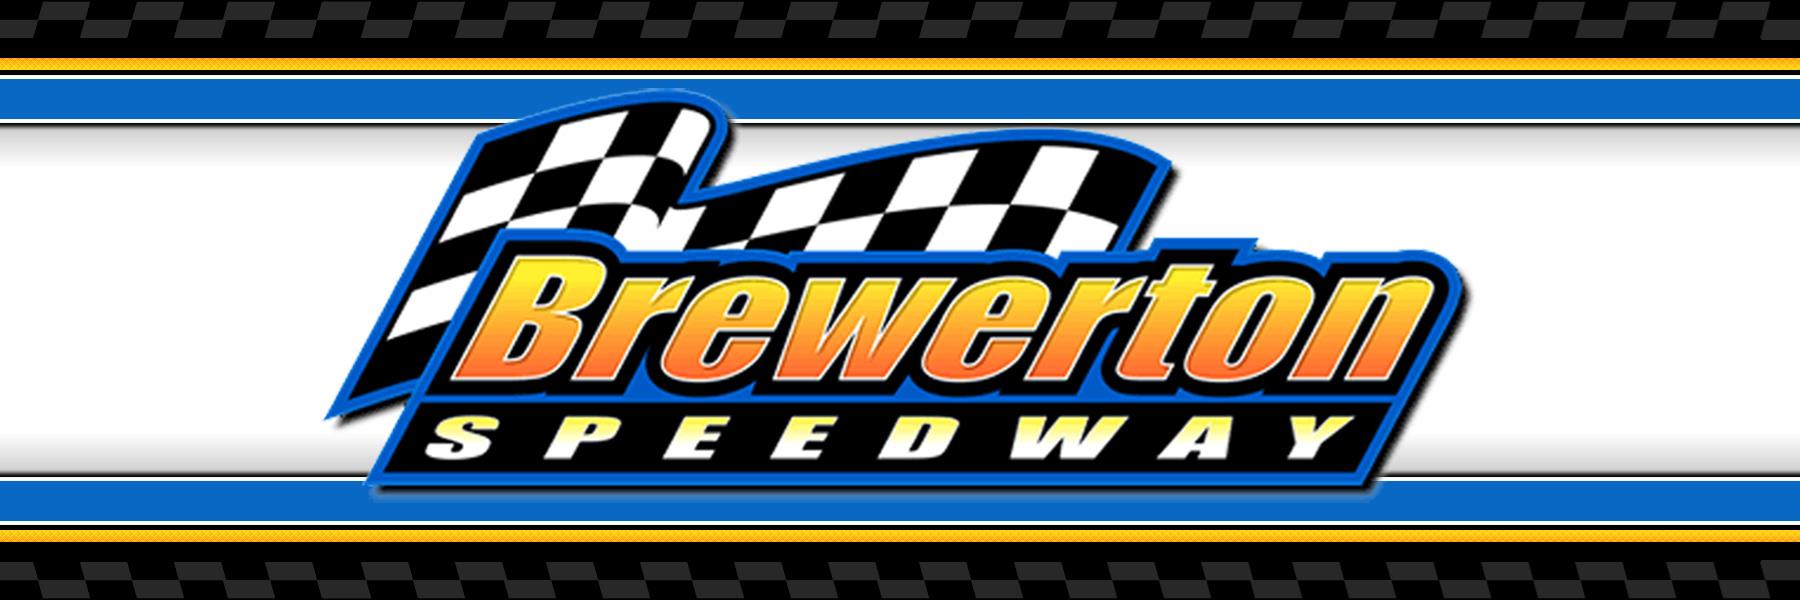 7/9/2022 - Brewerton Speedway